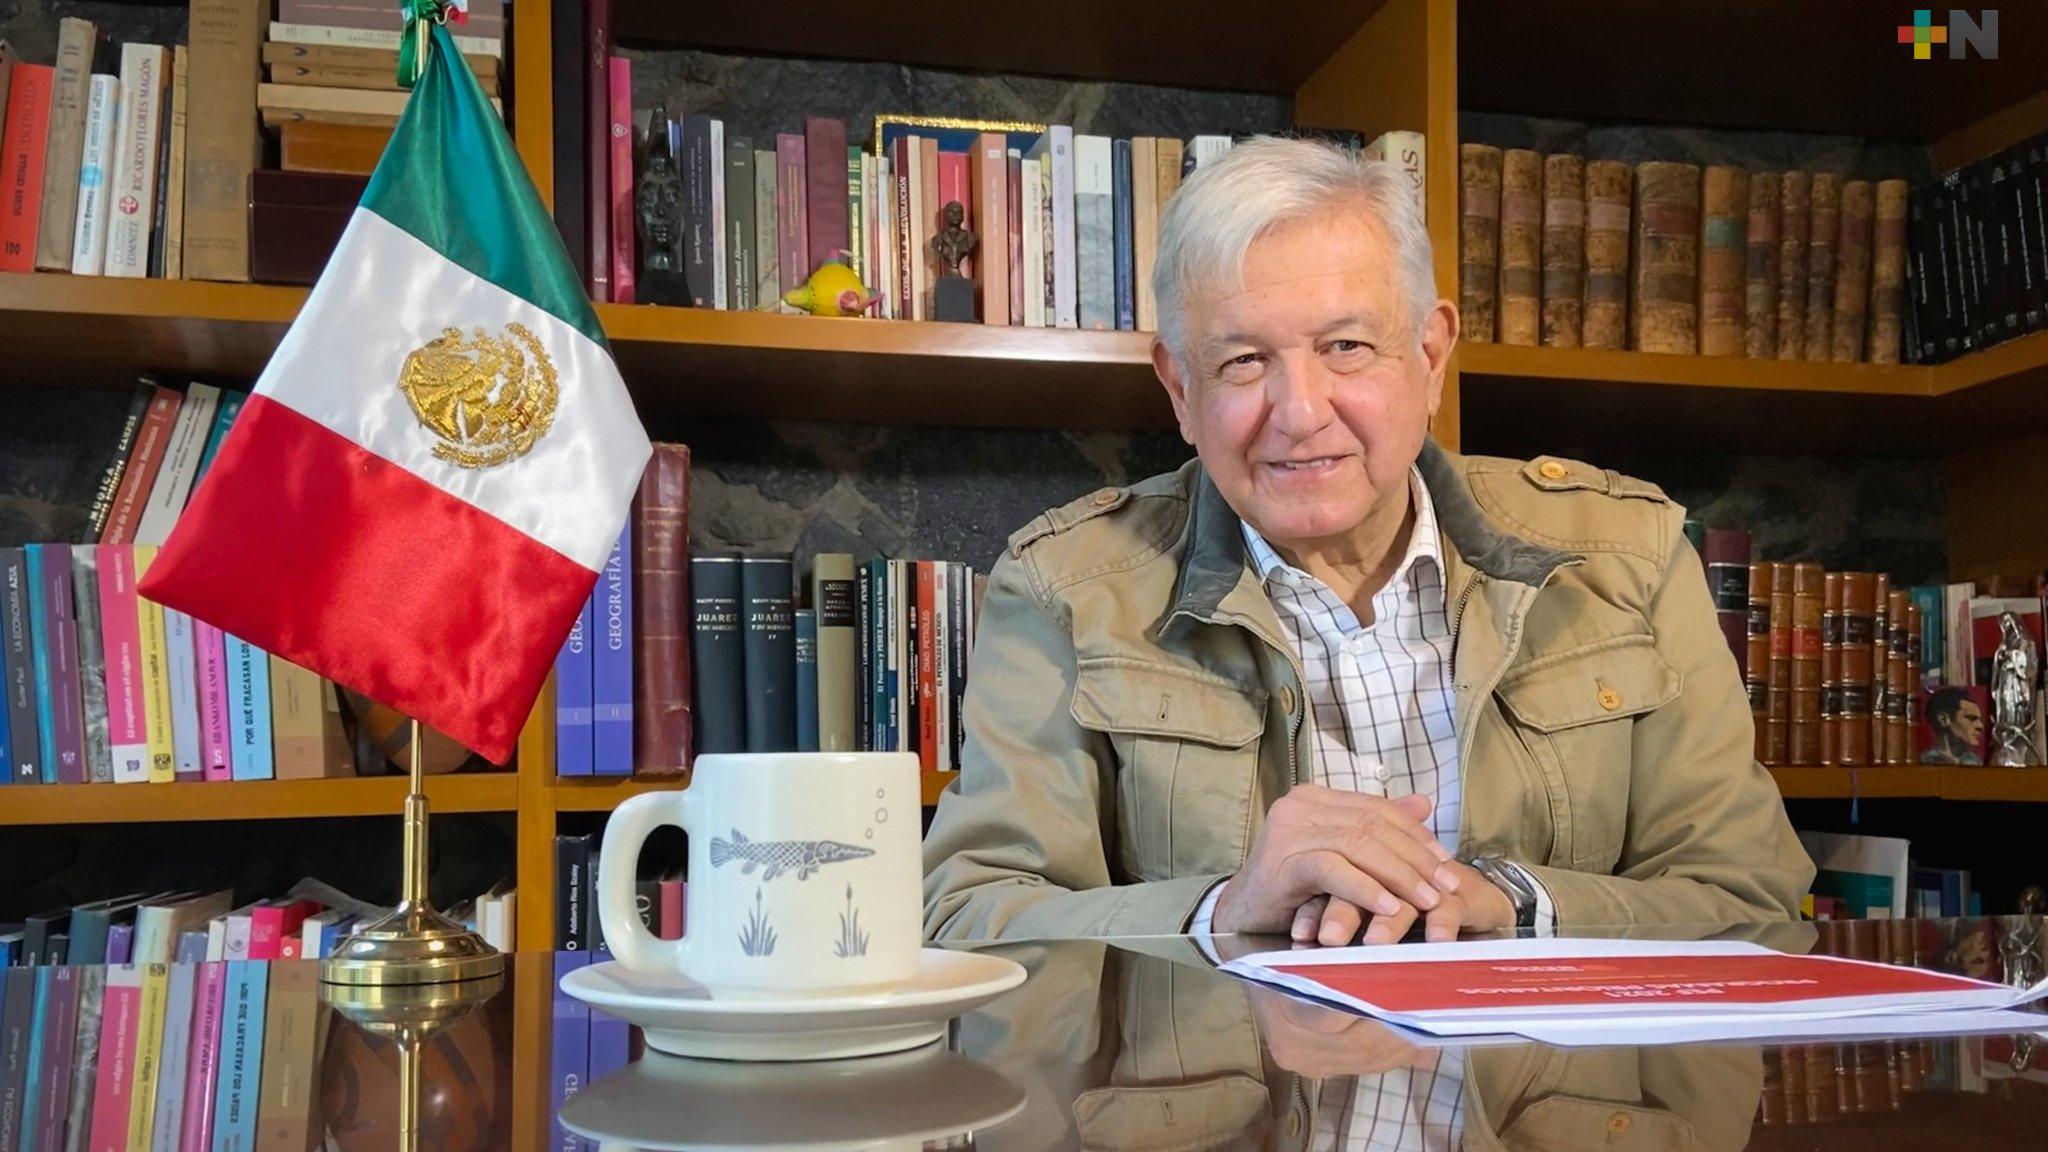 El Presidente López Obrador continúa en funciones y mejorando